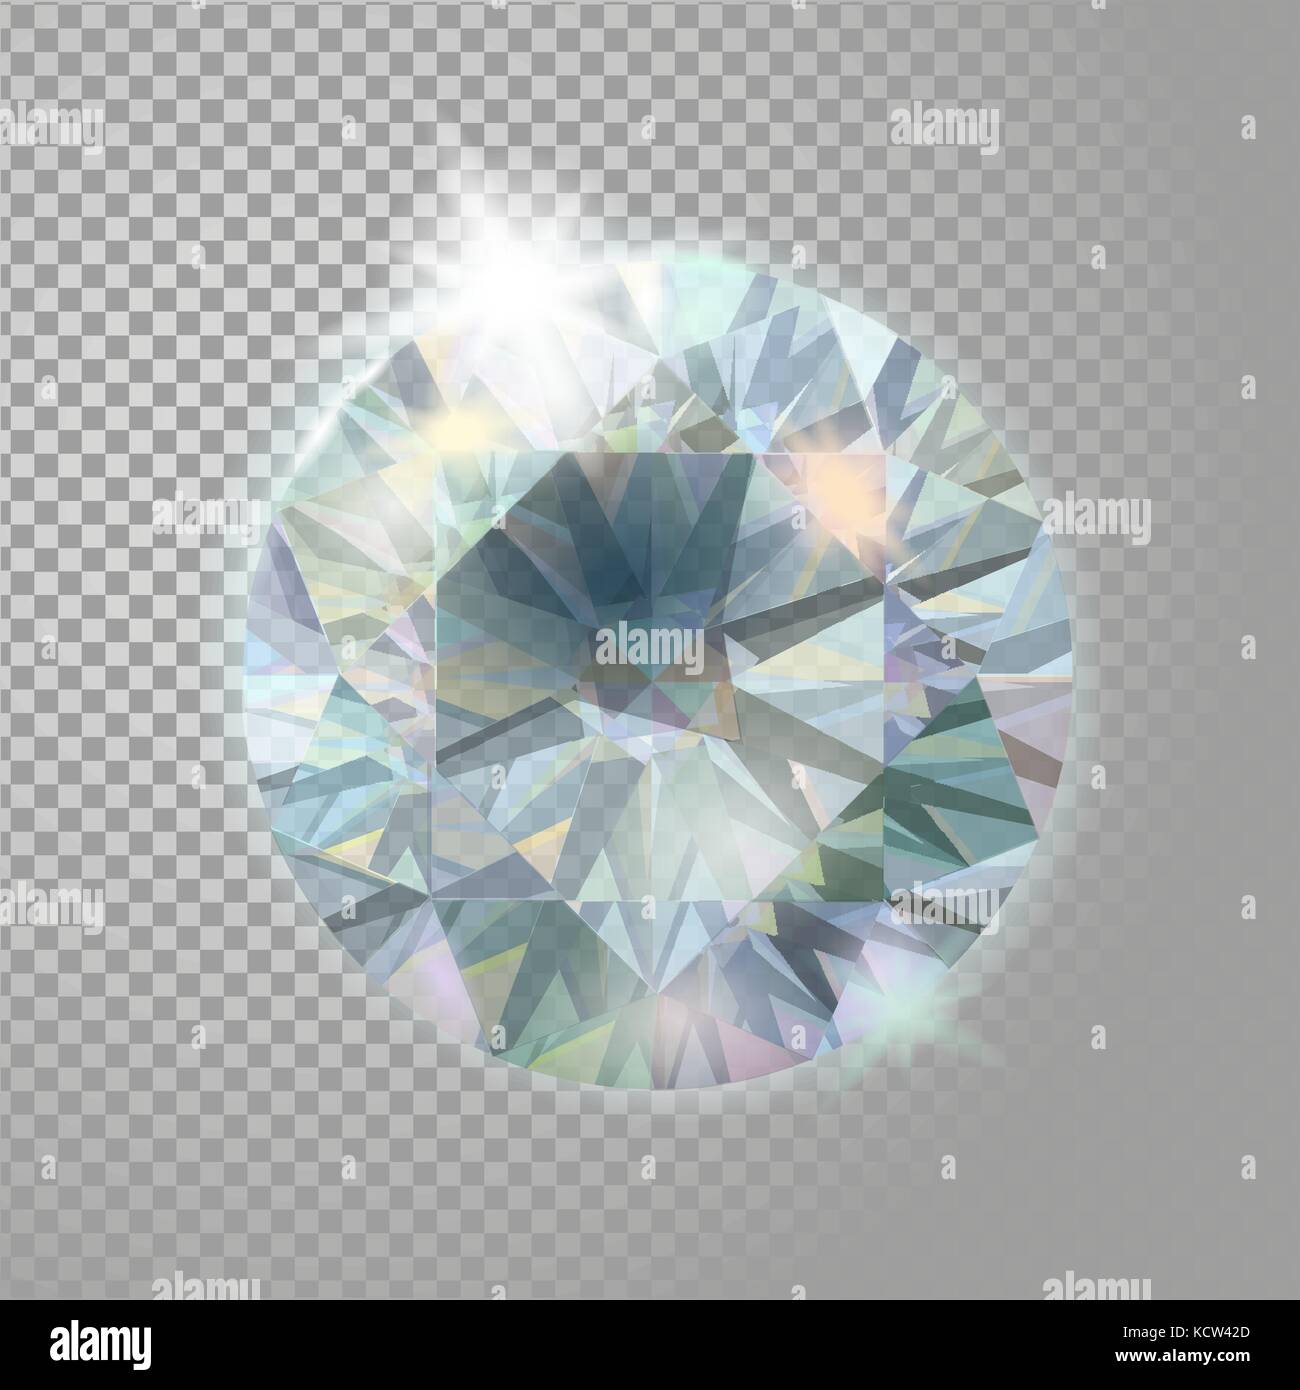 Kristall Diamant brillant Juwel Edelstein Schmuck. realistische 3d detaillierte Vector Illustration auf transparentem Hintergrund Stock Vektor